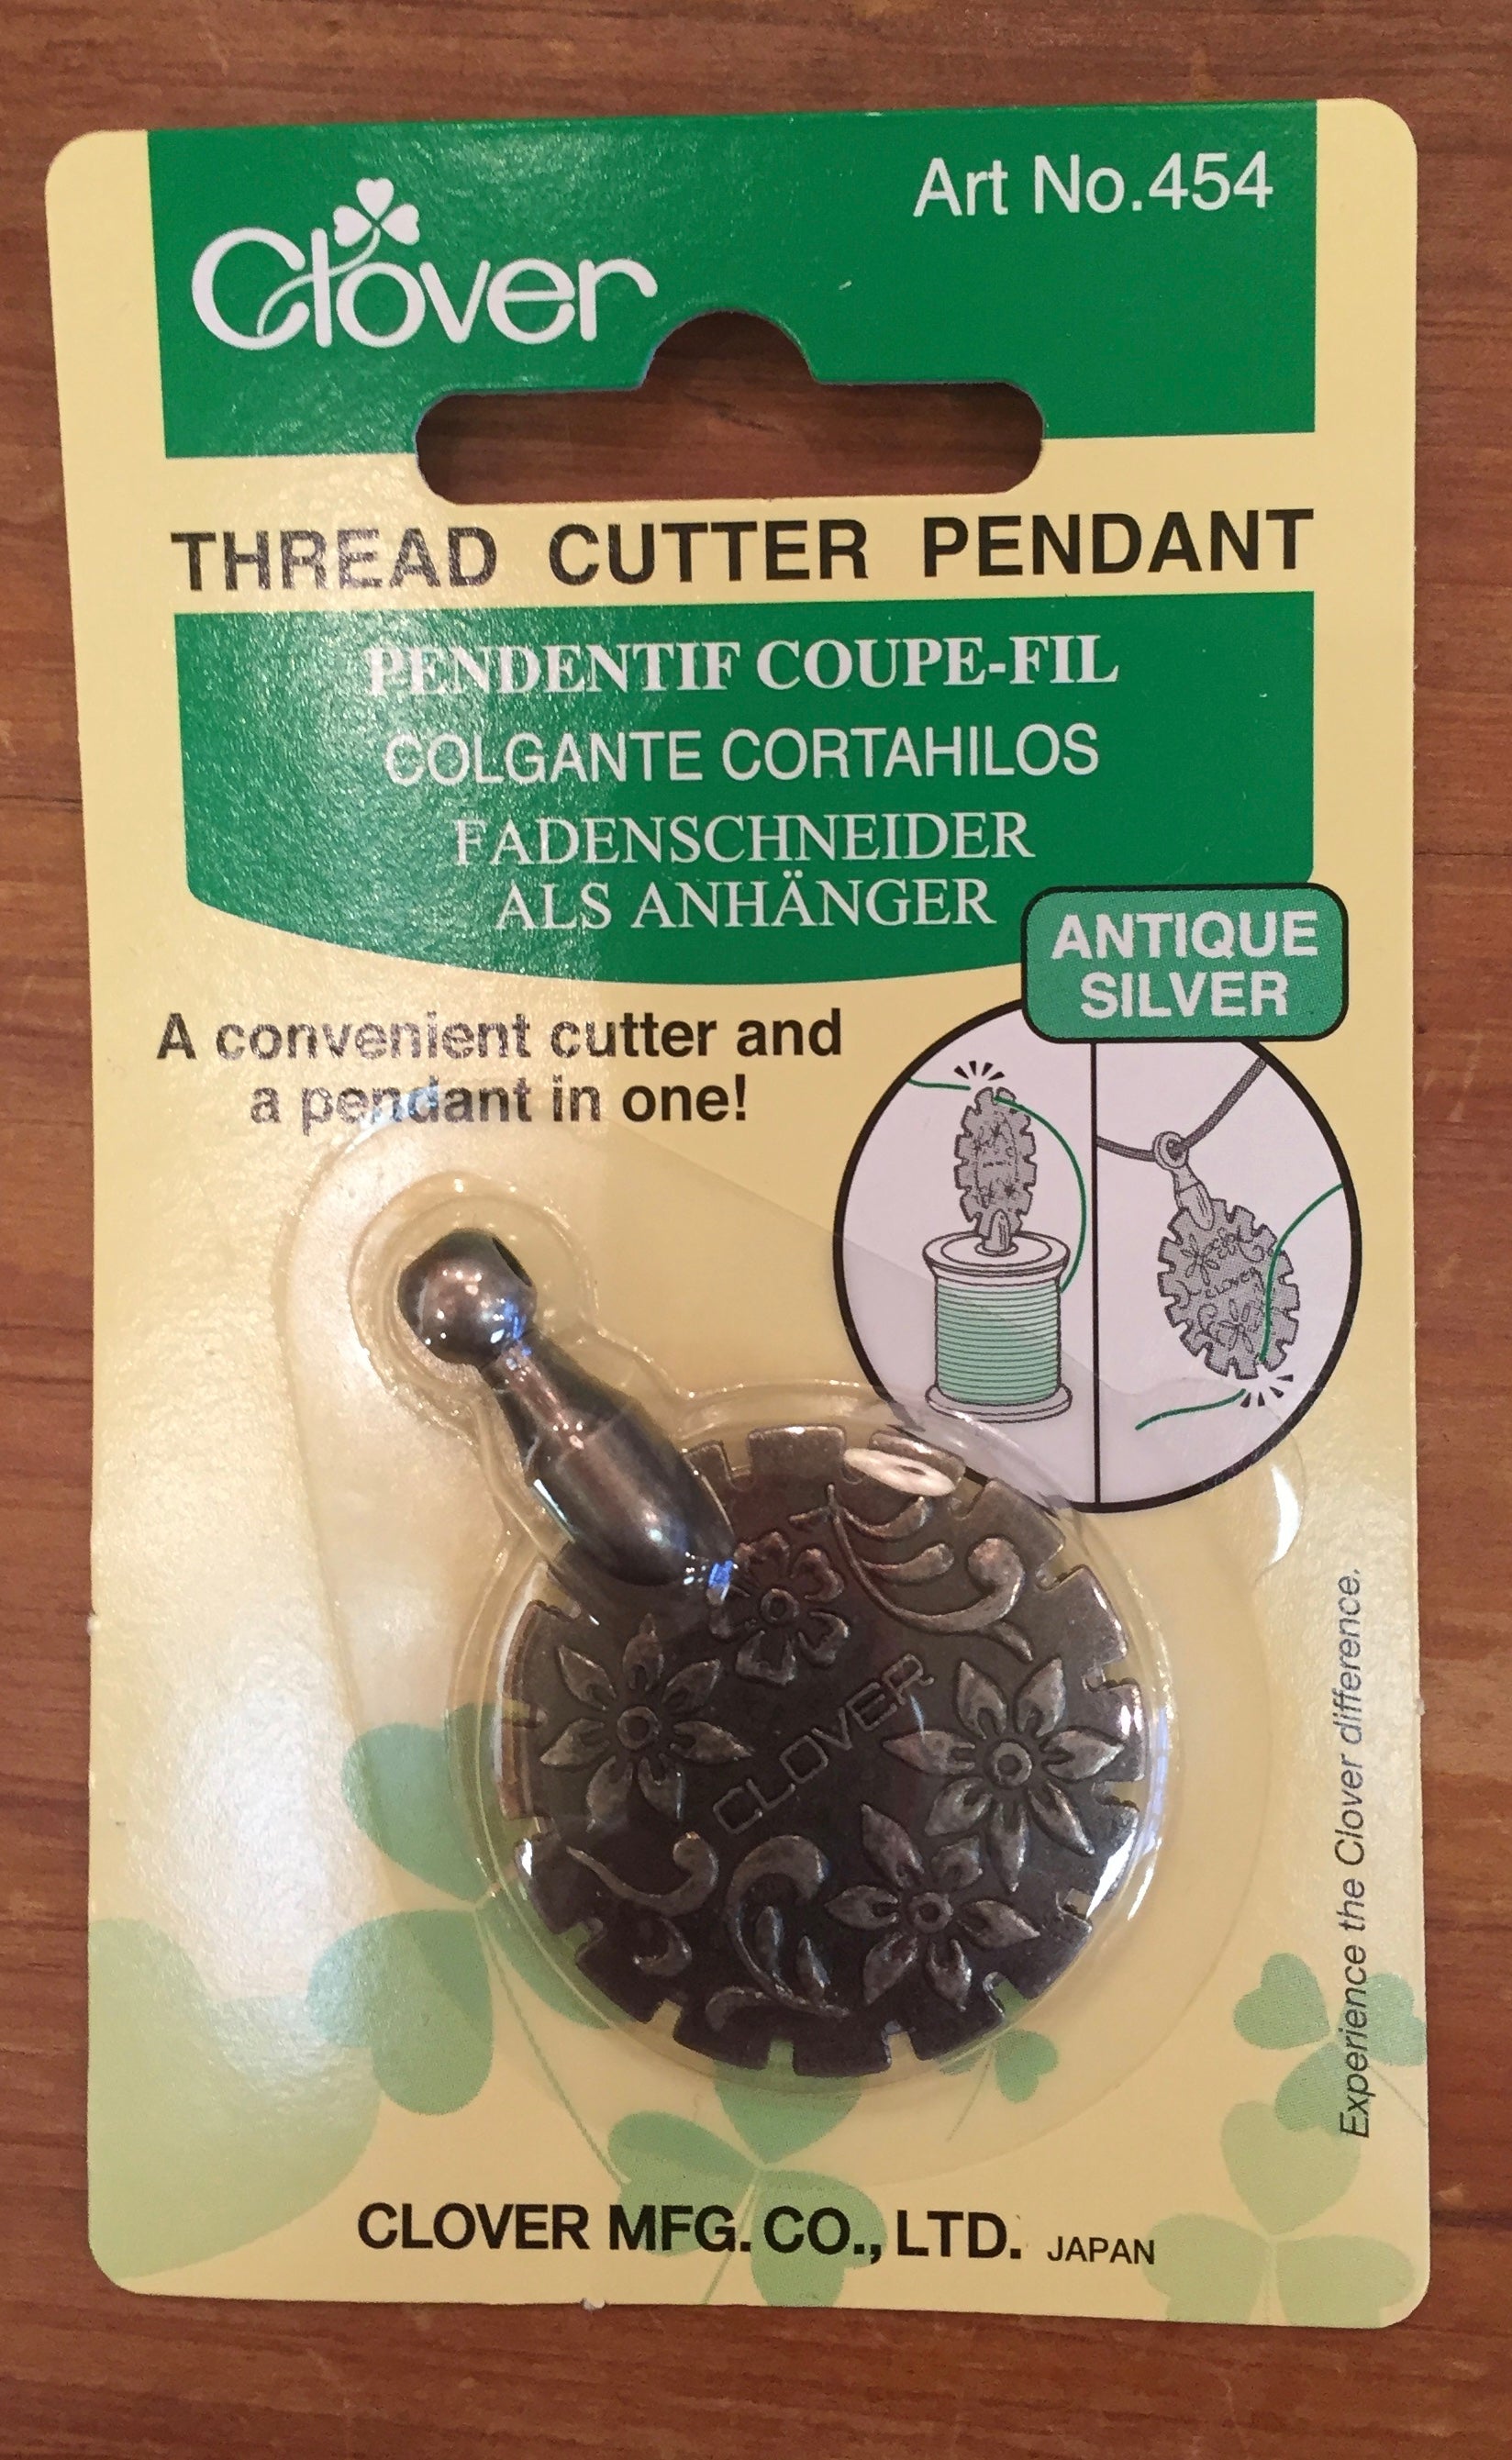 Clover Thread Cutter Pendant